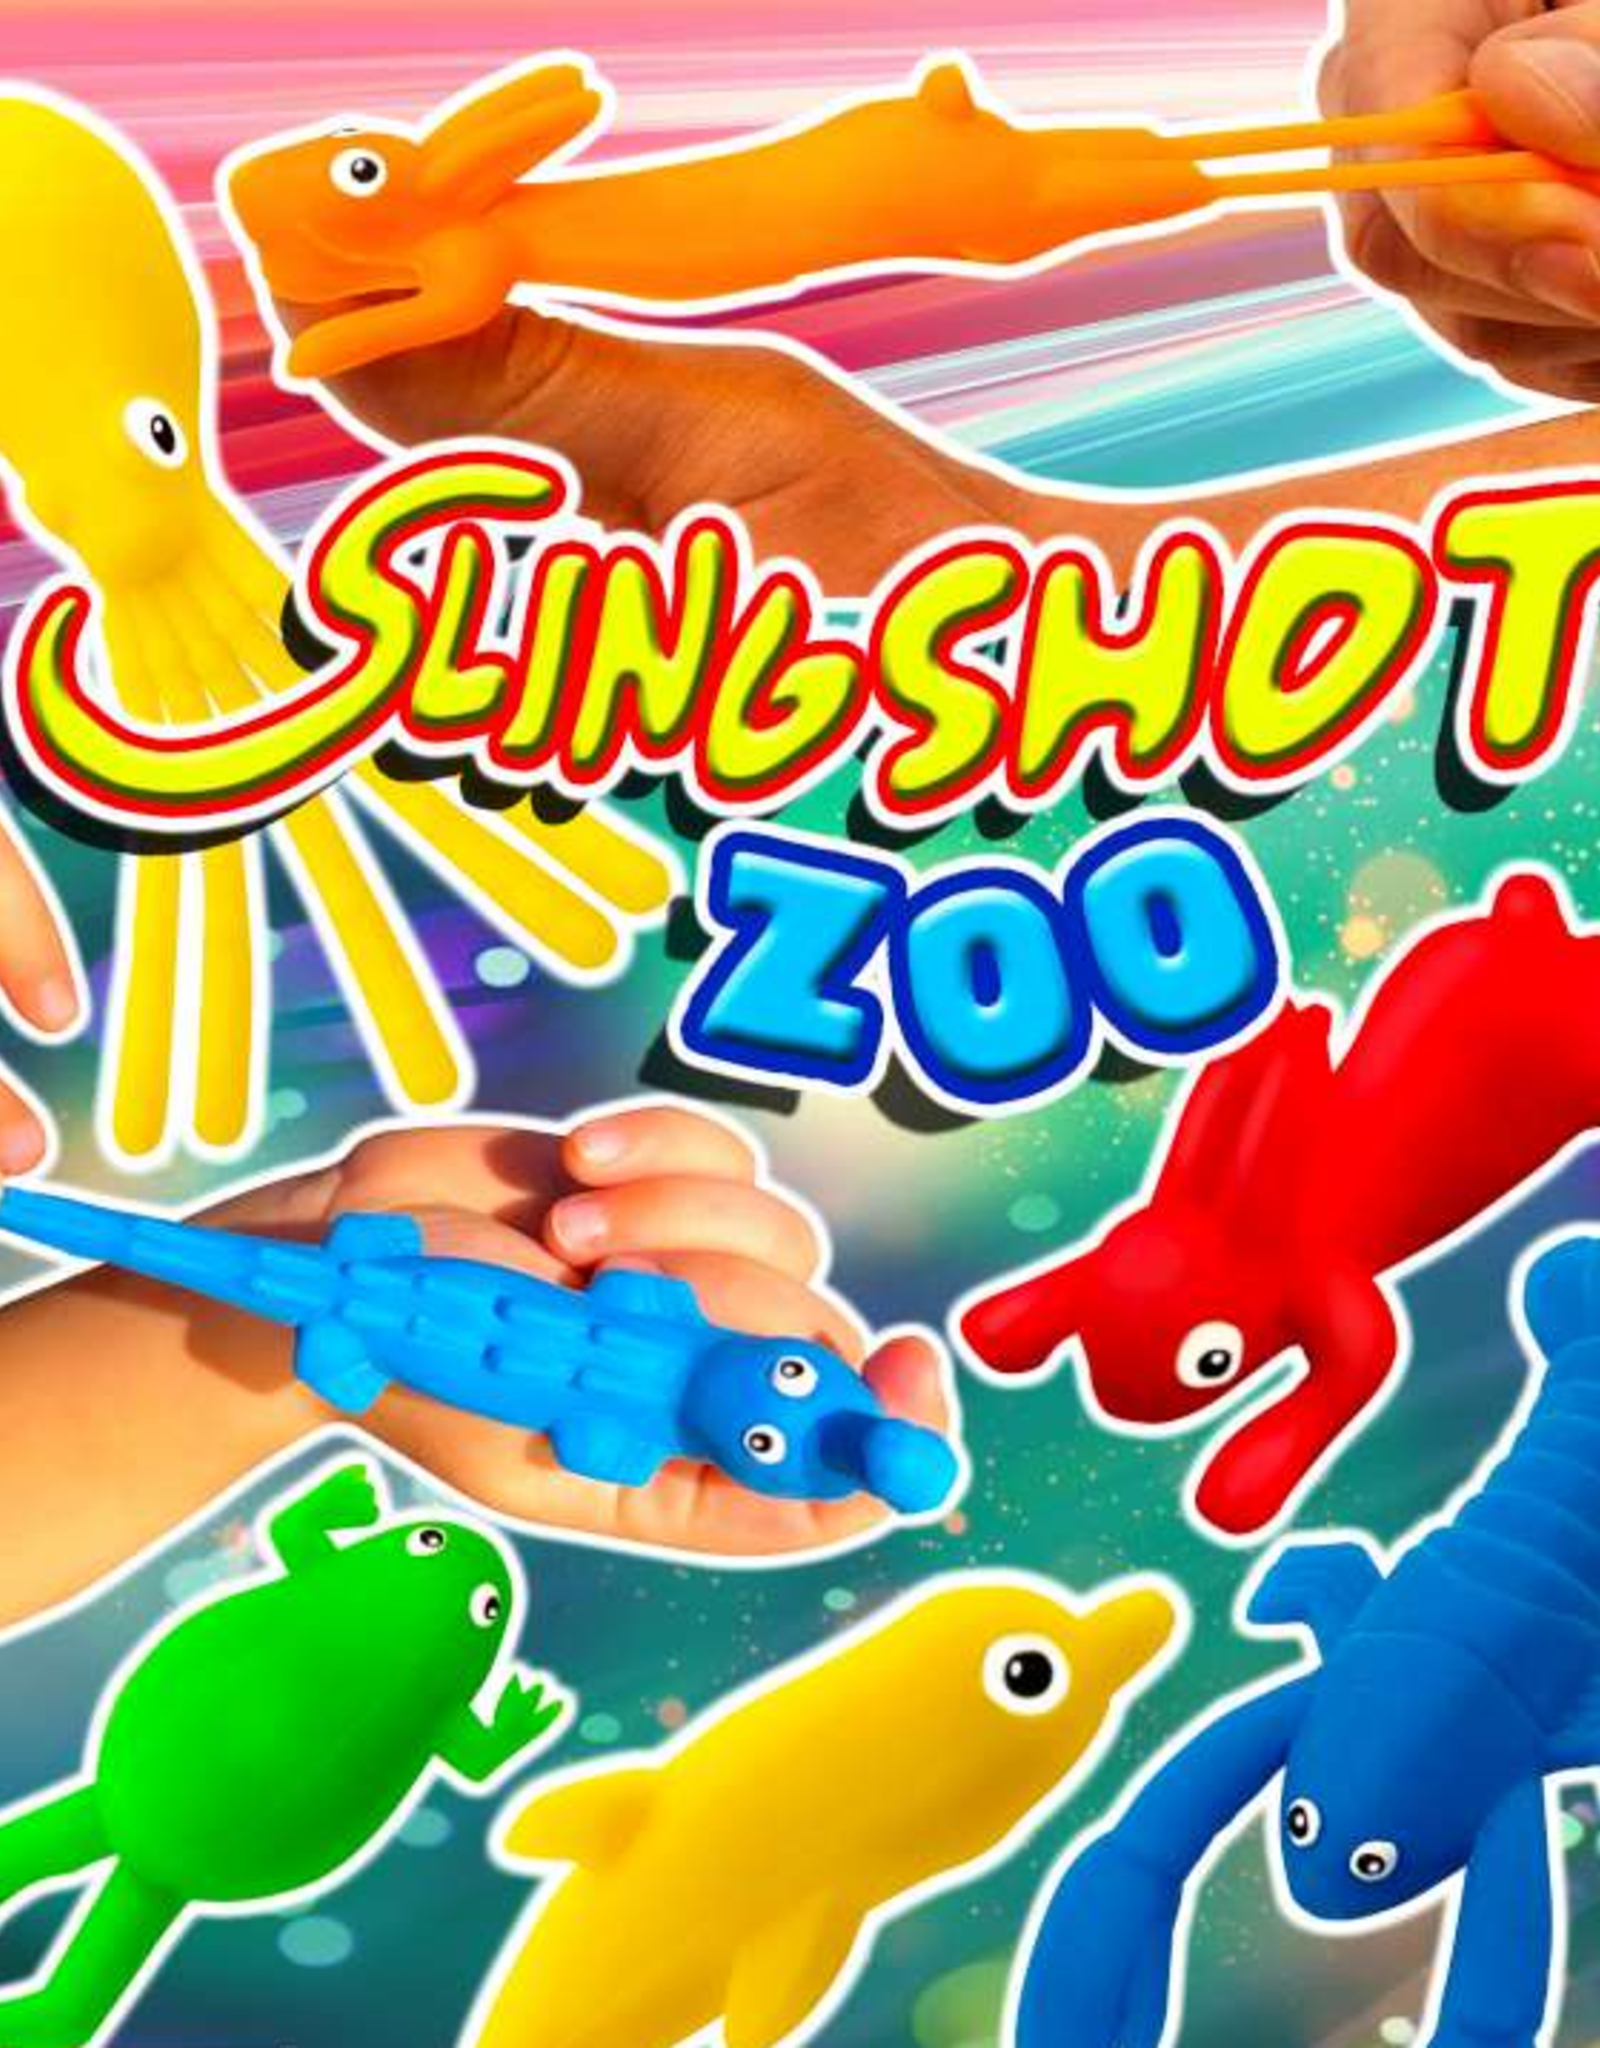 Slingshot Zoo